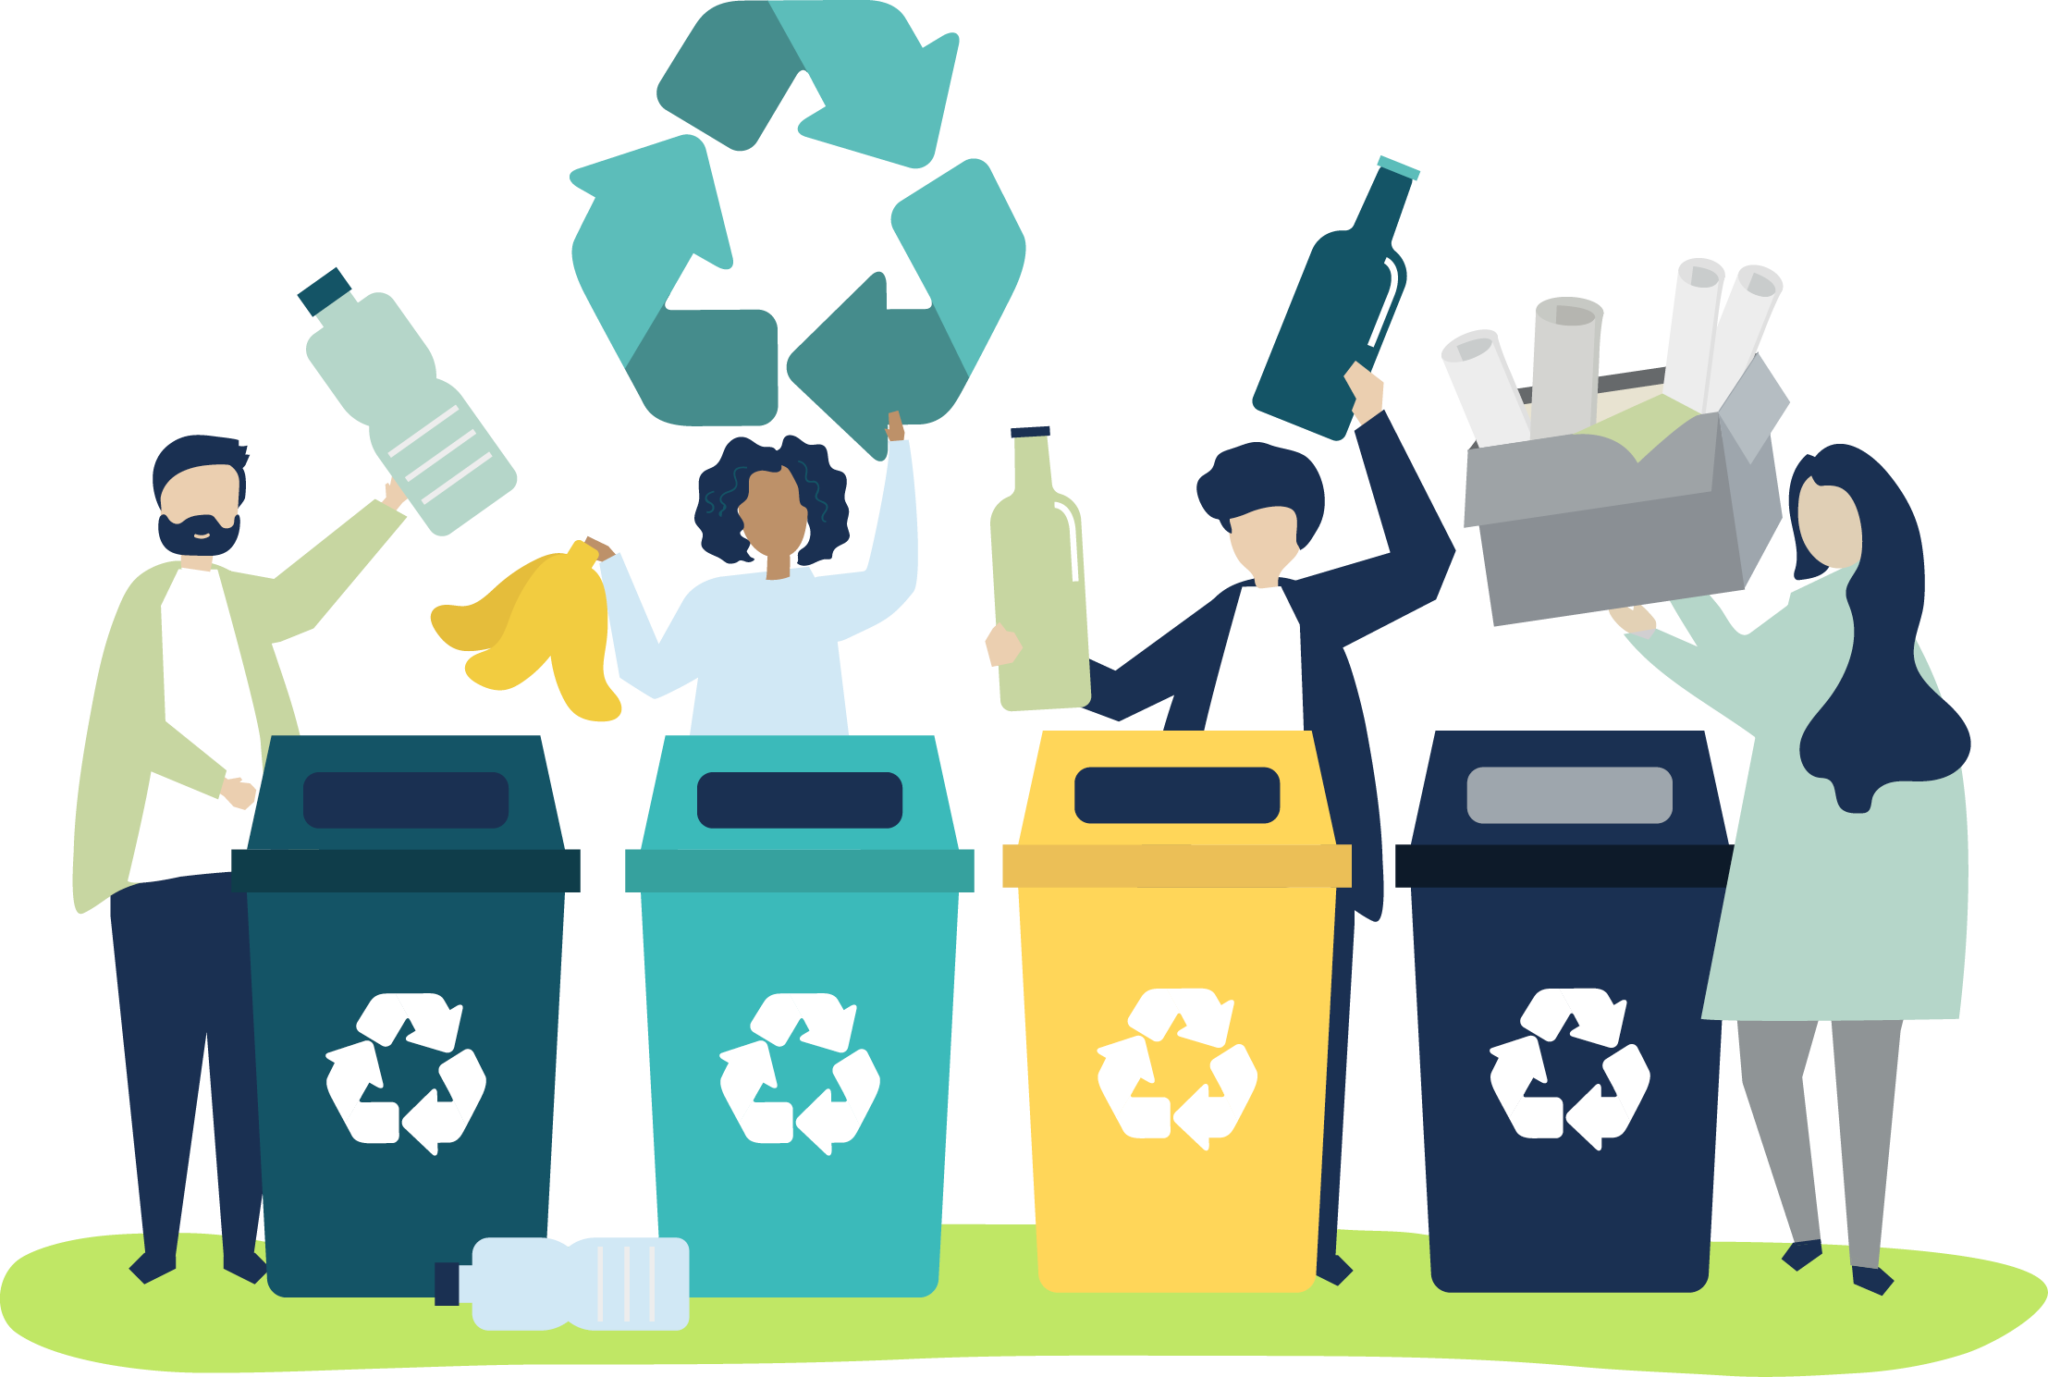 Утилизированный сбор. Утилизация мусора. Сортировка мусора. Утилизация биомусора. Иллюстрация утилизация мусора.